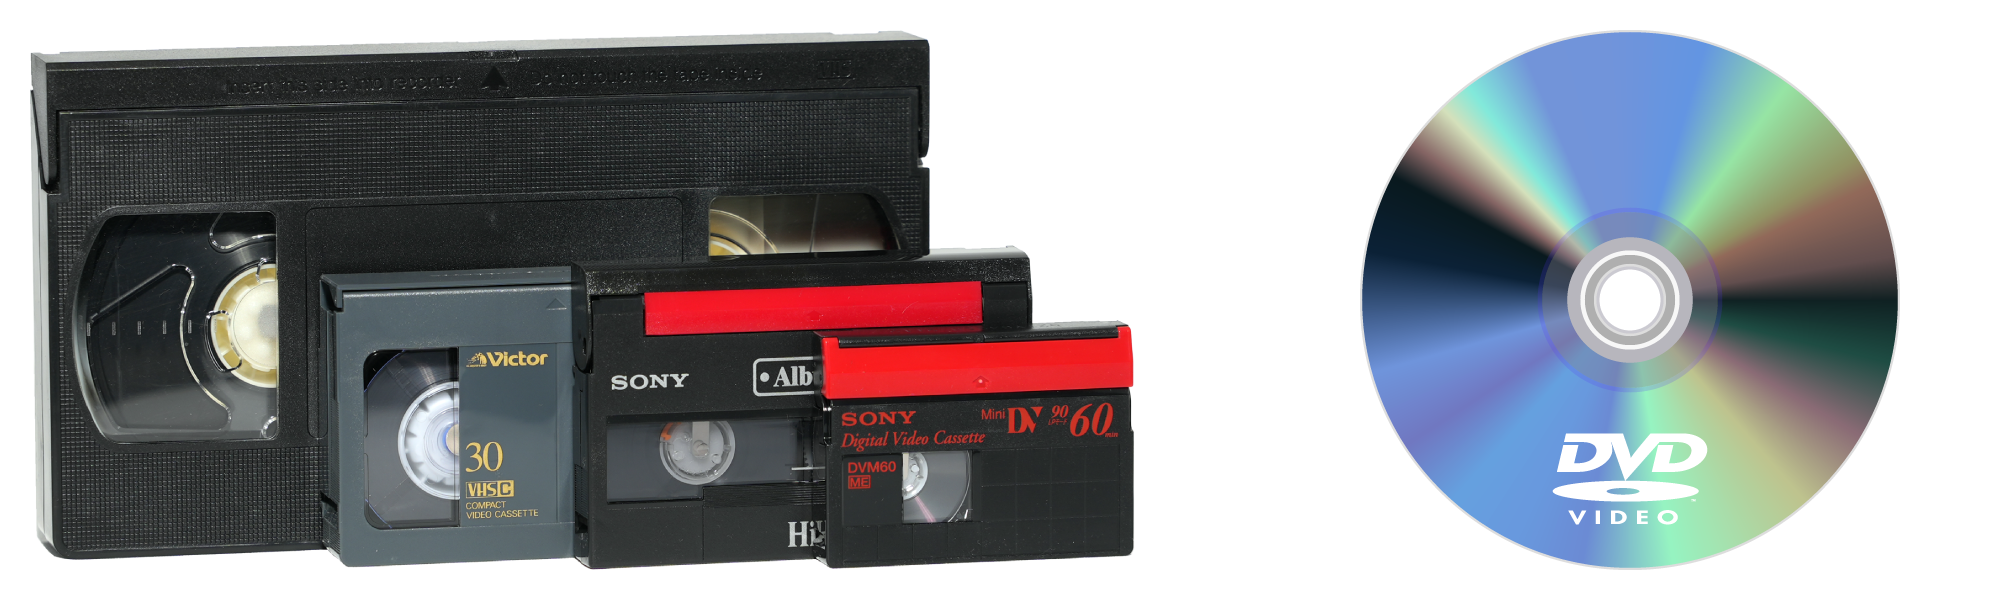 ビデオテープをDVDにダビングイメージ